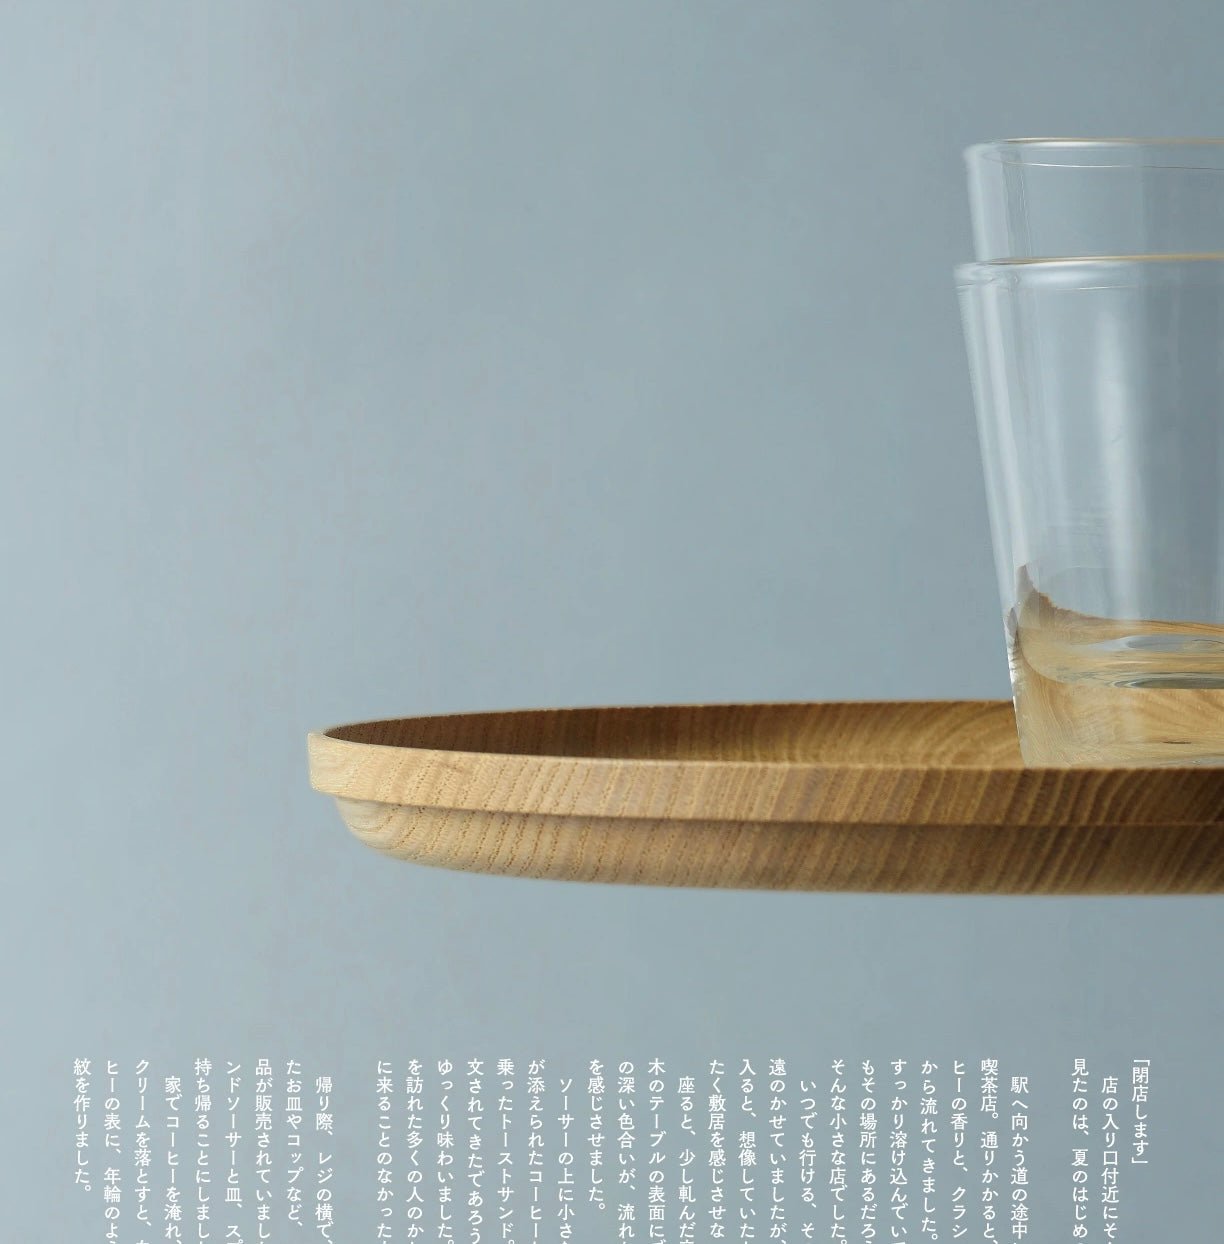 Matsuda ‘Bon Plate’ - hånddrejet japansk bakke i kastanjetræ_1 by Rune-Jakobsen Design